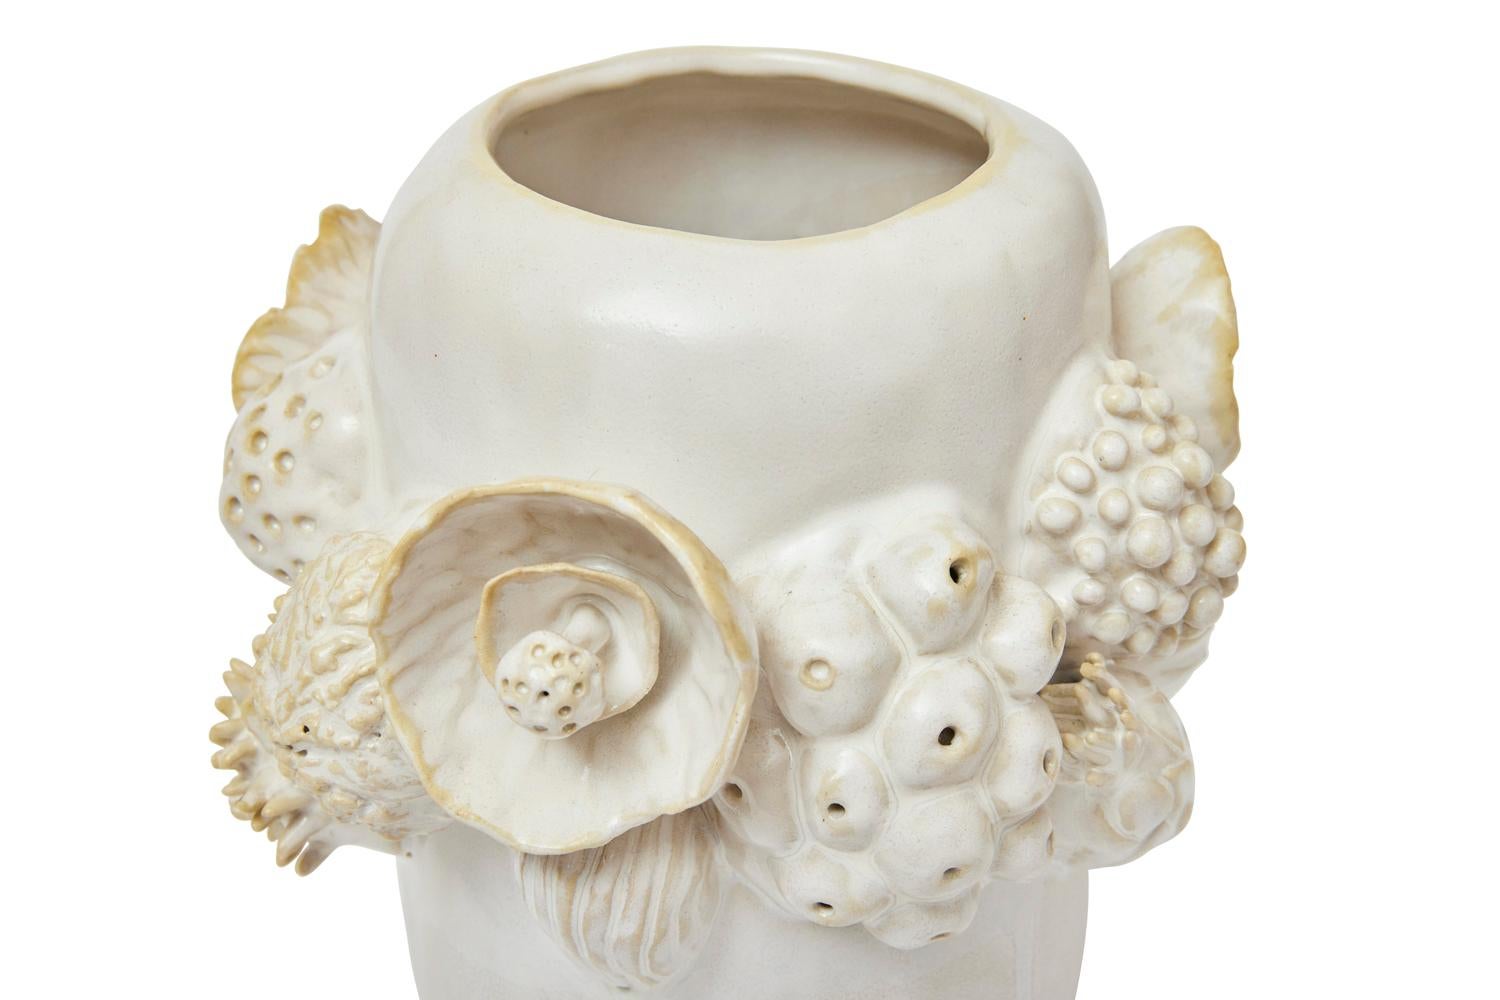 Botanica Vessel in Glazed Ceramic by Trish DeMasi For Sale 3